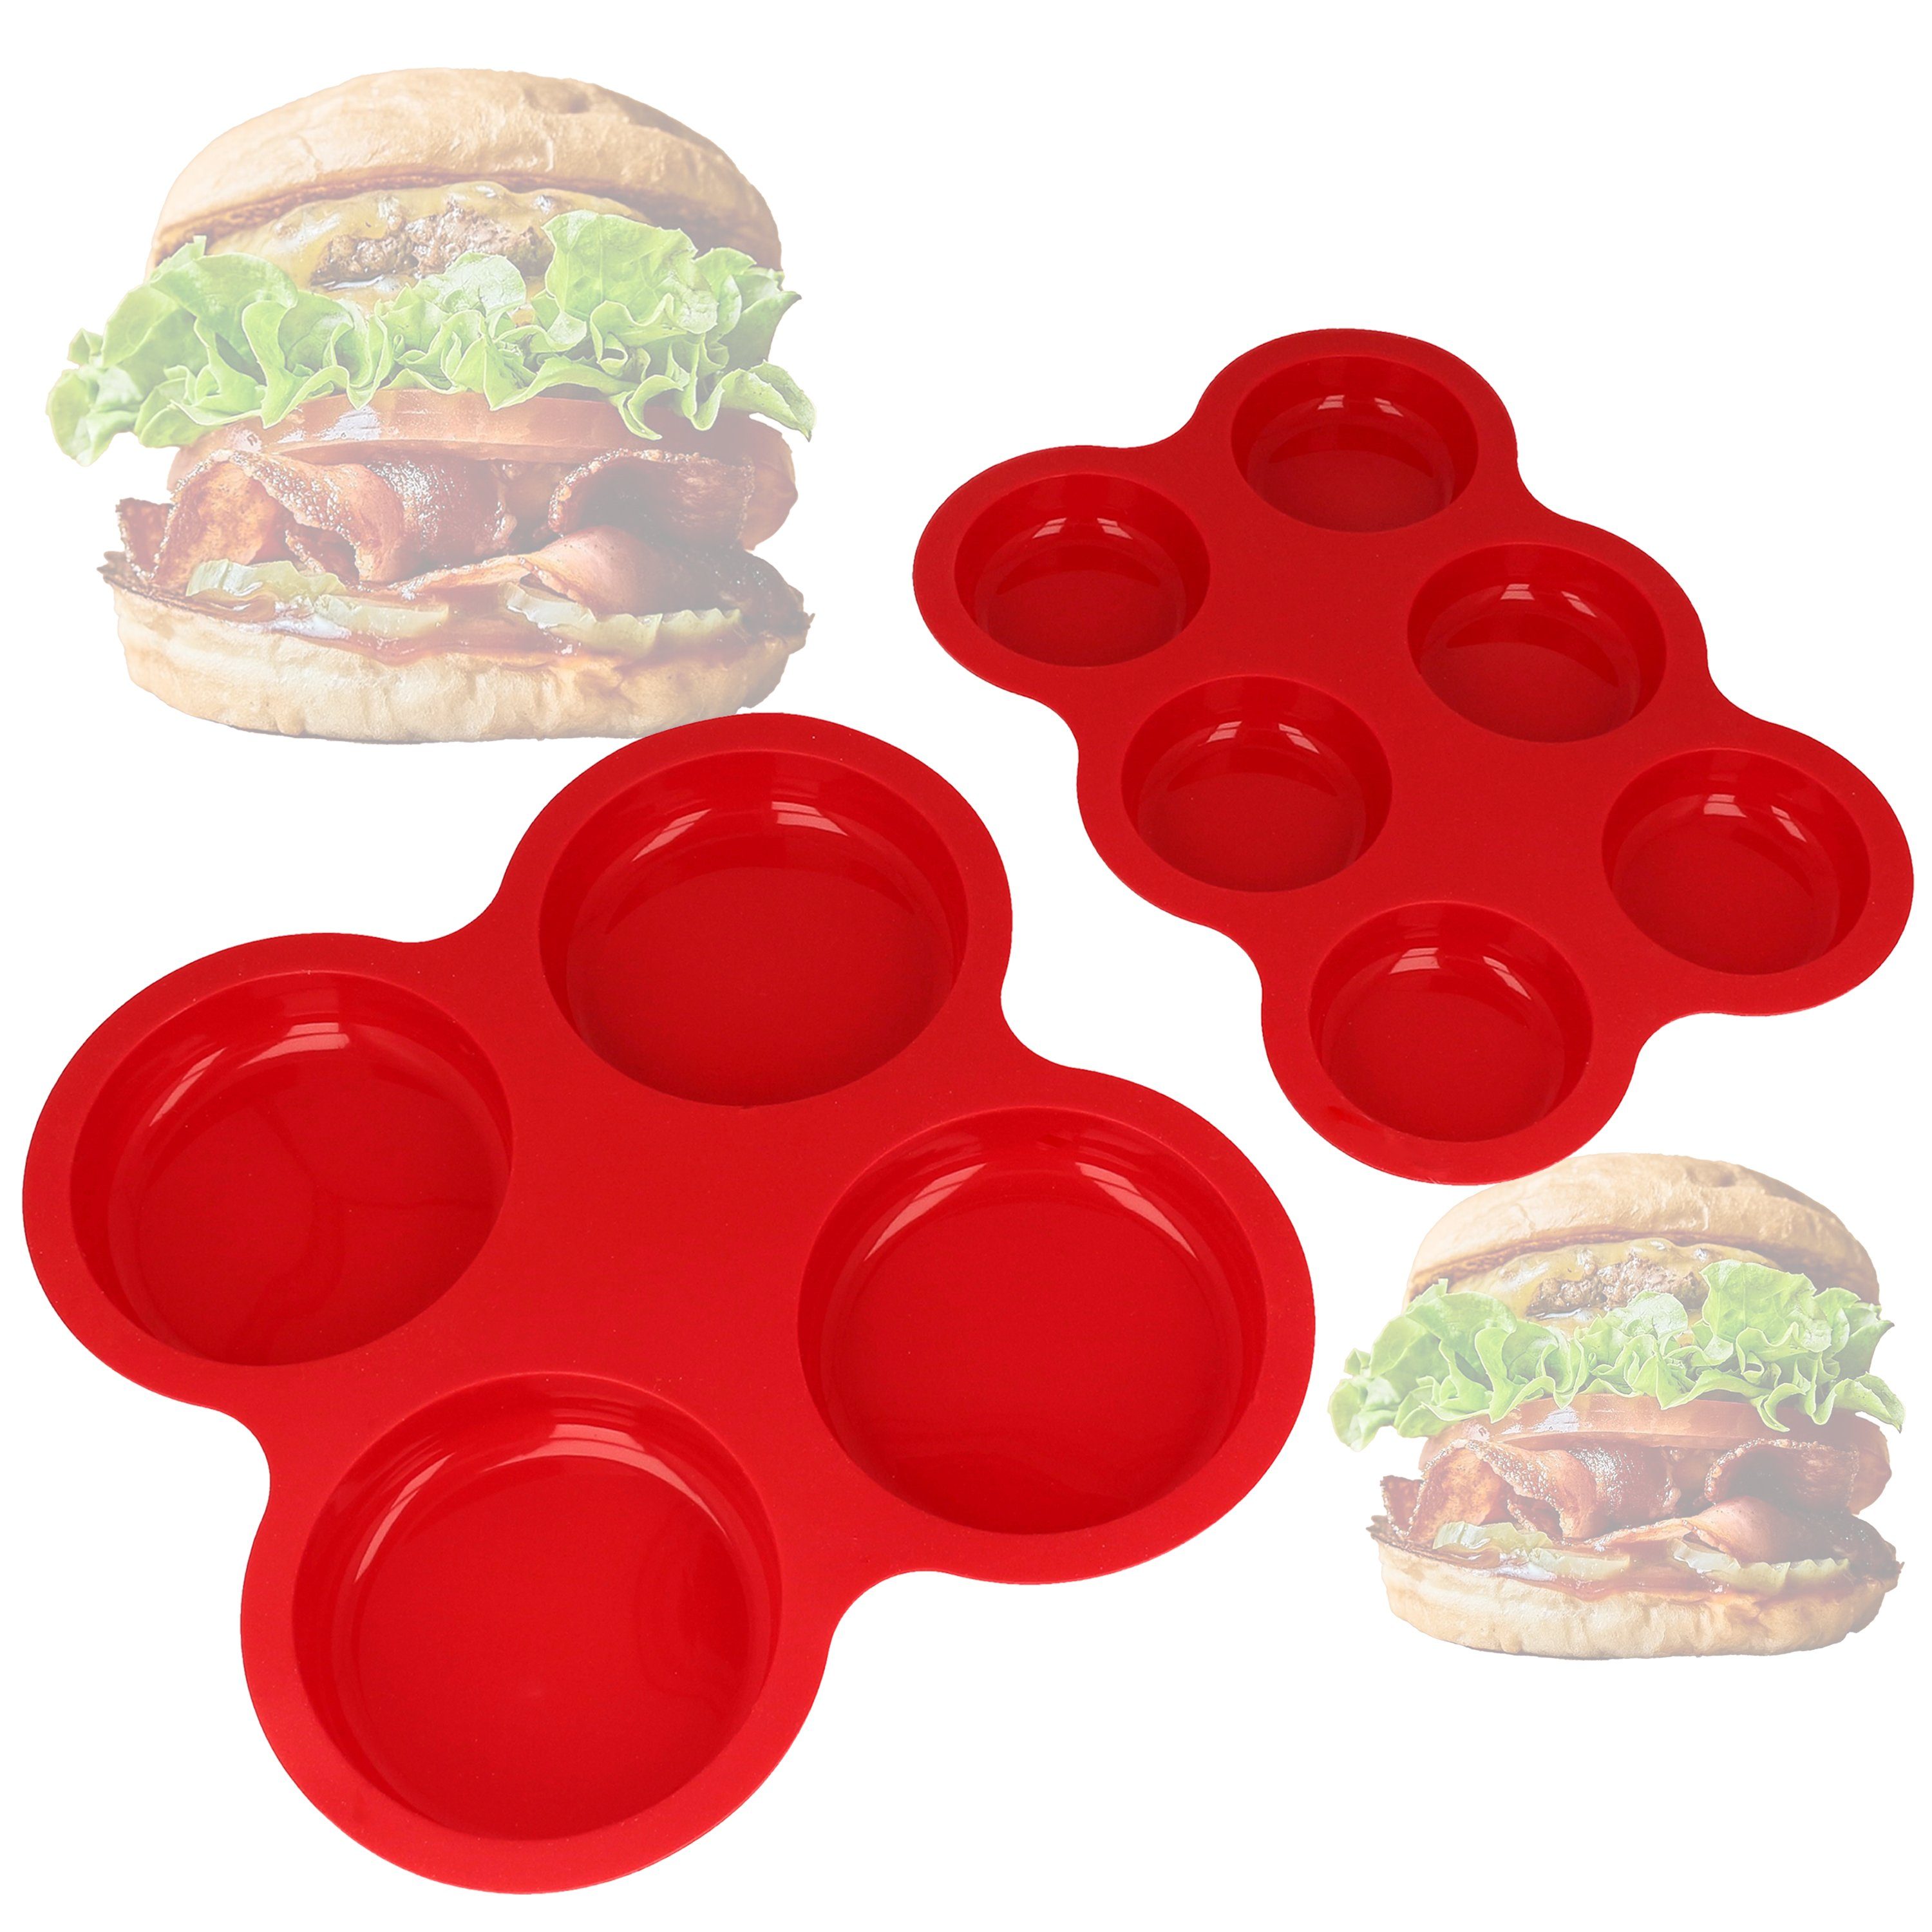 Ernesto Silikonform Silikon Backform für Burger Bun - Form für selbstgemachte Brötchen, (Set), Hamburger Brötchen Form aus geschmacks - und geruchsneutralem Material